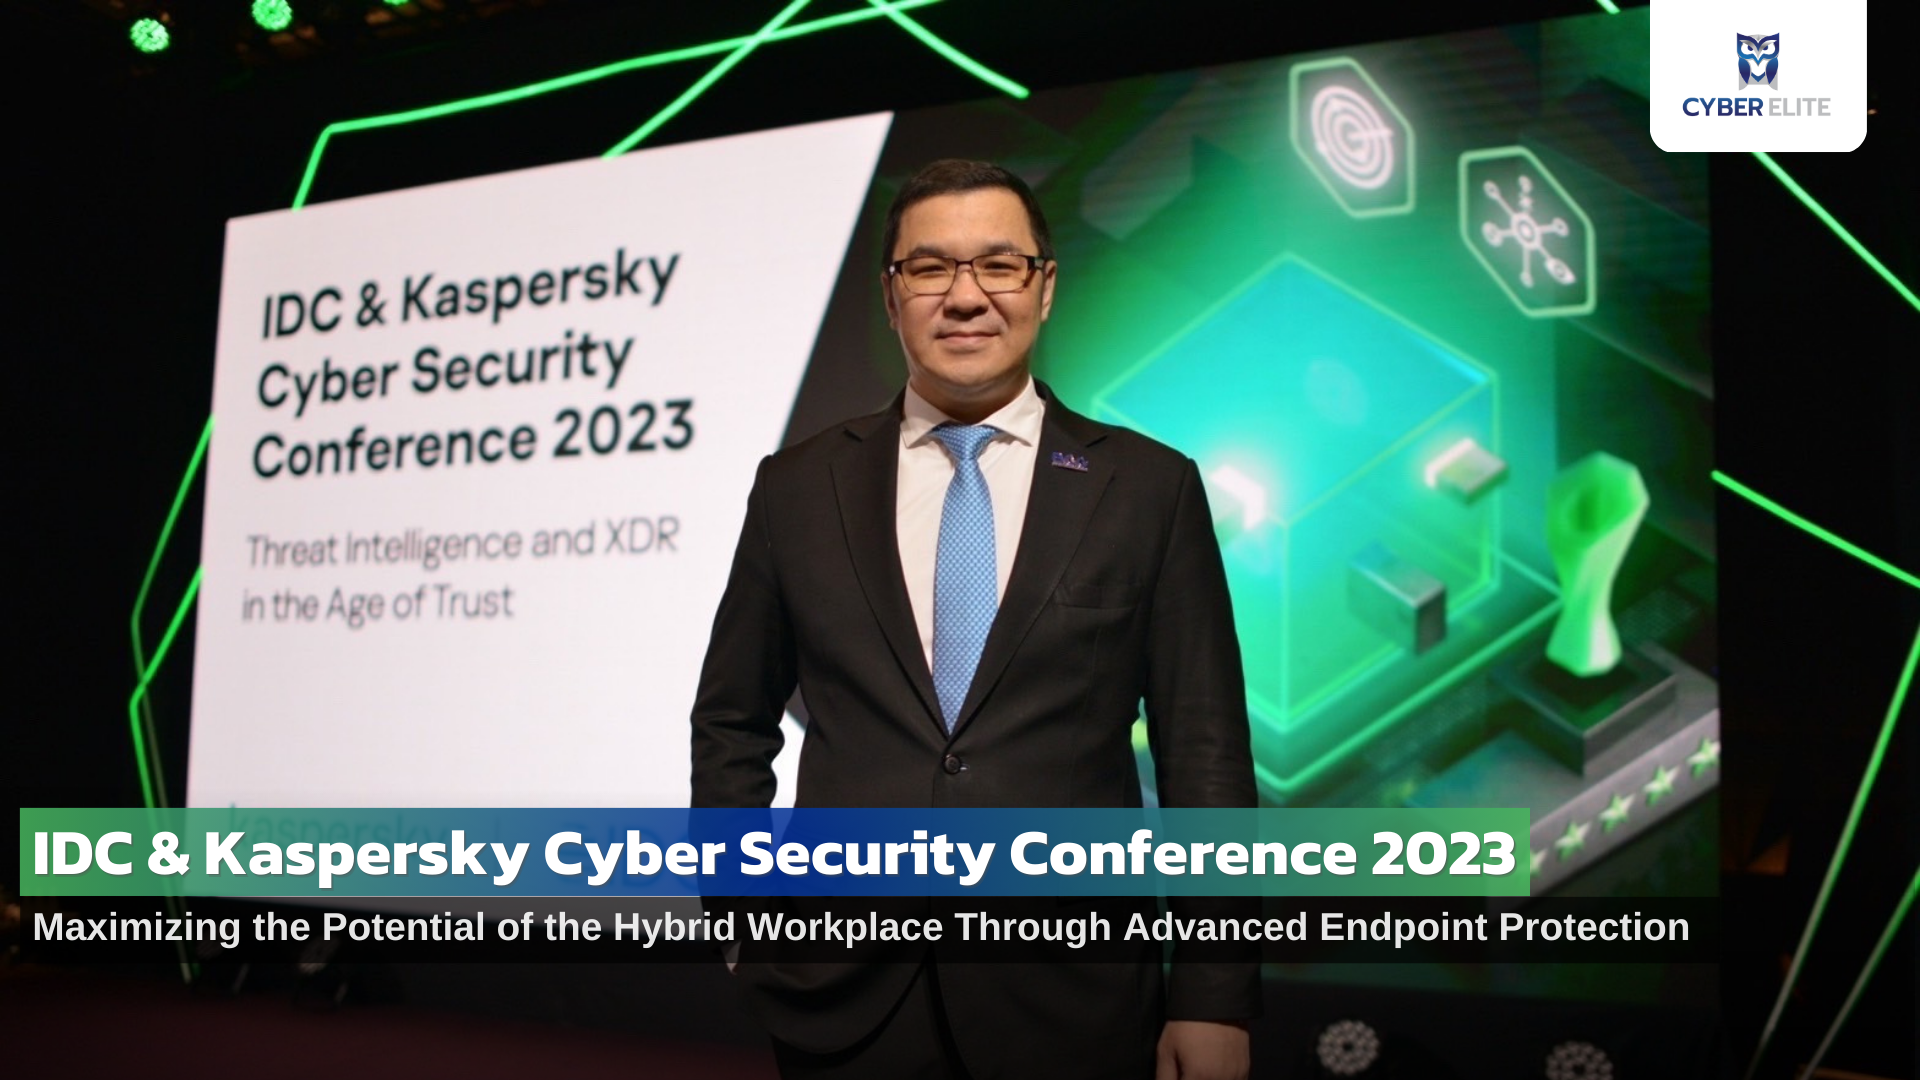 ดร.ศุภกร กังพิศดาร กรรมการผู้จัดการ บริษัท ไซเบอร์ อีลีท ได้รับเกียรติร่วมเป็นผู้ร่วมเสวนาในงาน “IDC & Kaspersky Cyber Security Conference 2023”